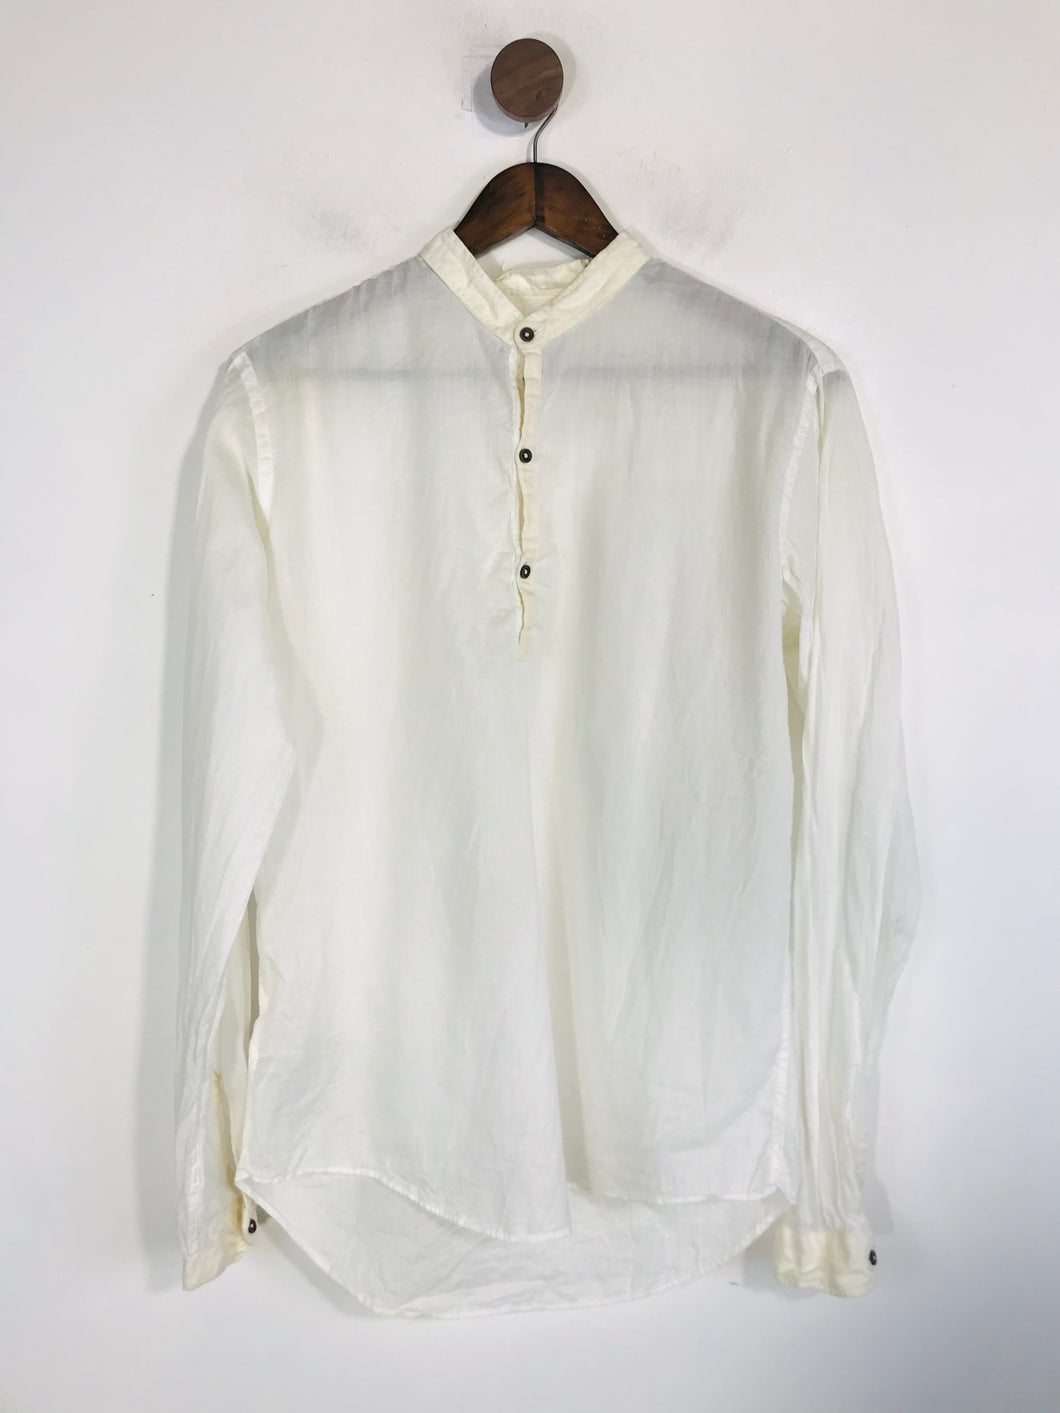 Zara Men's Lightweight Button-Up Shirt | M | White